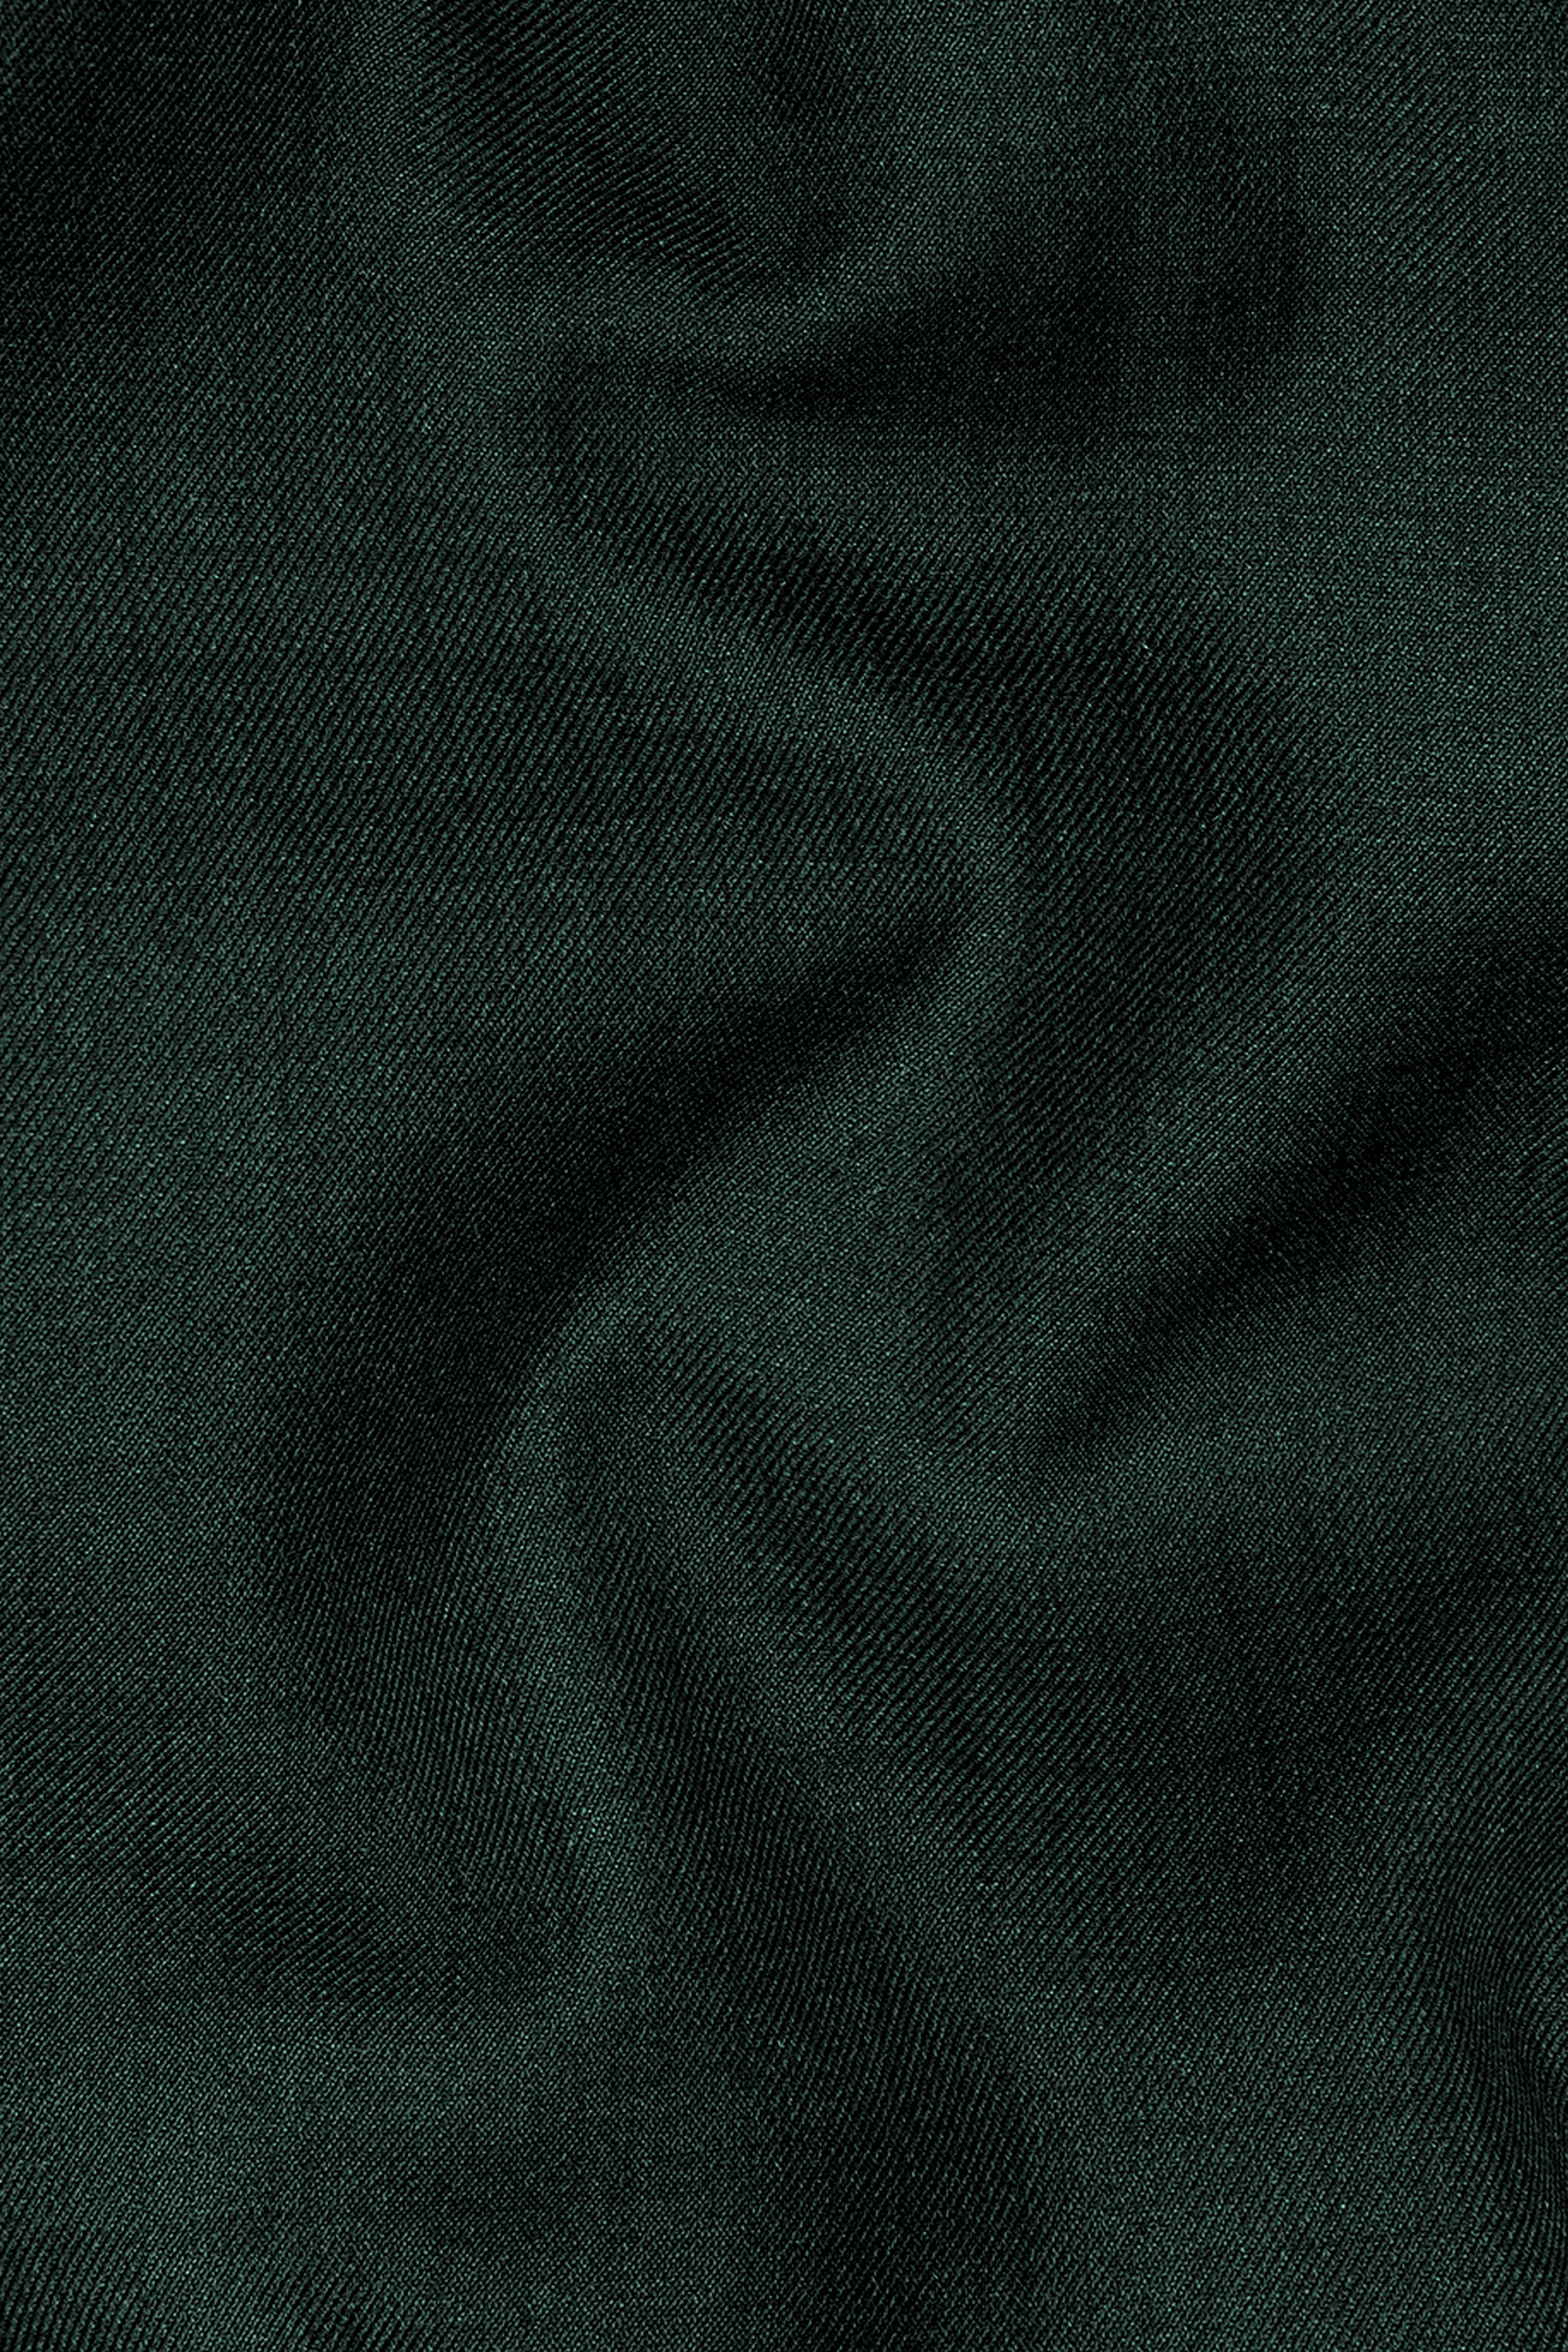 Gable Green Wool Rich Pant T2901-SW-28, T2901-SW-30, T2901-SW-32, T2901-SW-34, T2901-SW-36, T2901-SW-38, T2901-SW-40, T2901-SW-42, T2901-SW-44